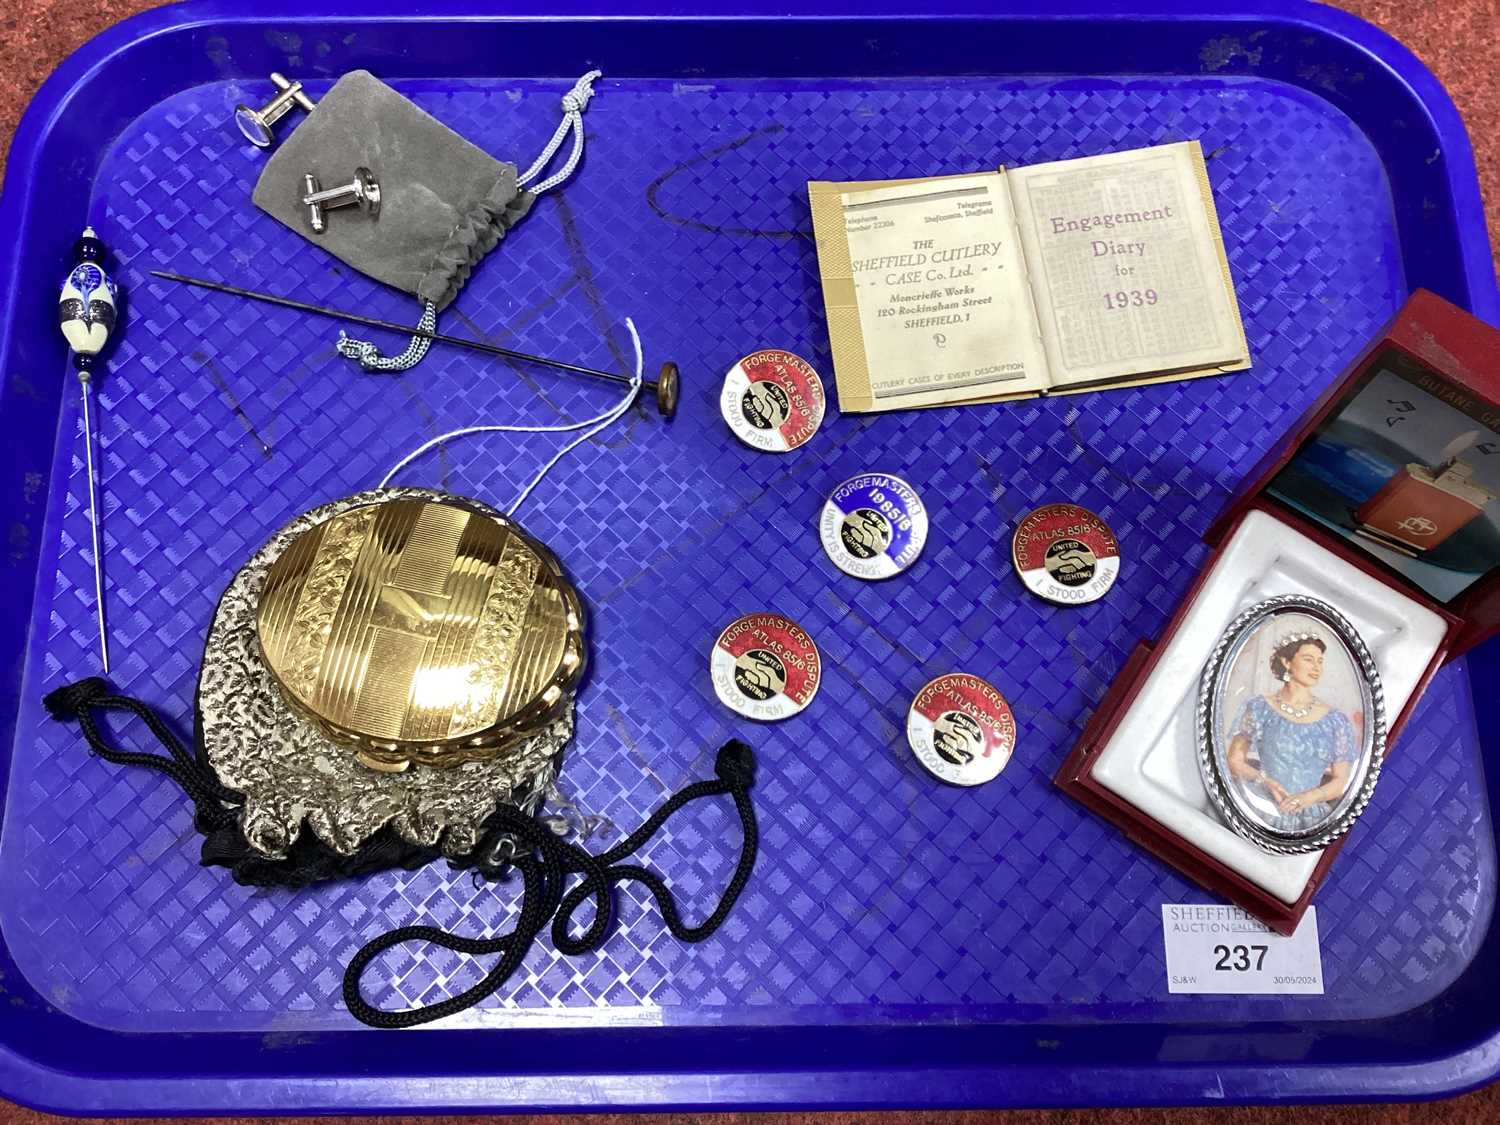 1980's Forgemasters (Sheffield) Dispute Enamel Badges, vintage brooch of Queen Elizabeth II, Kigu